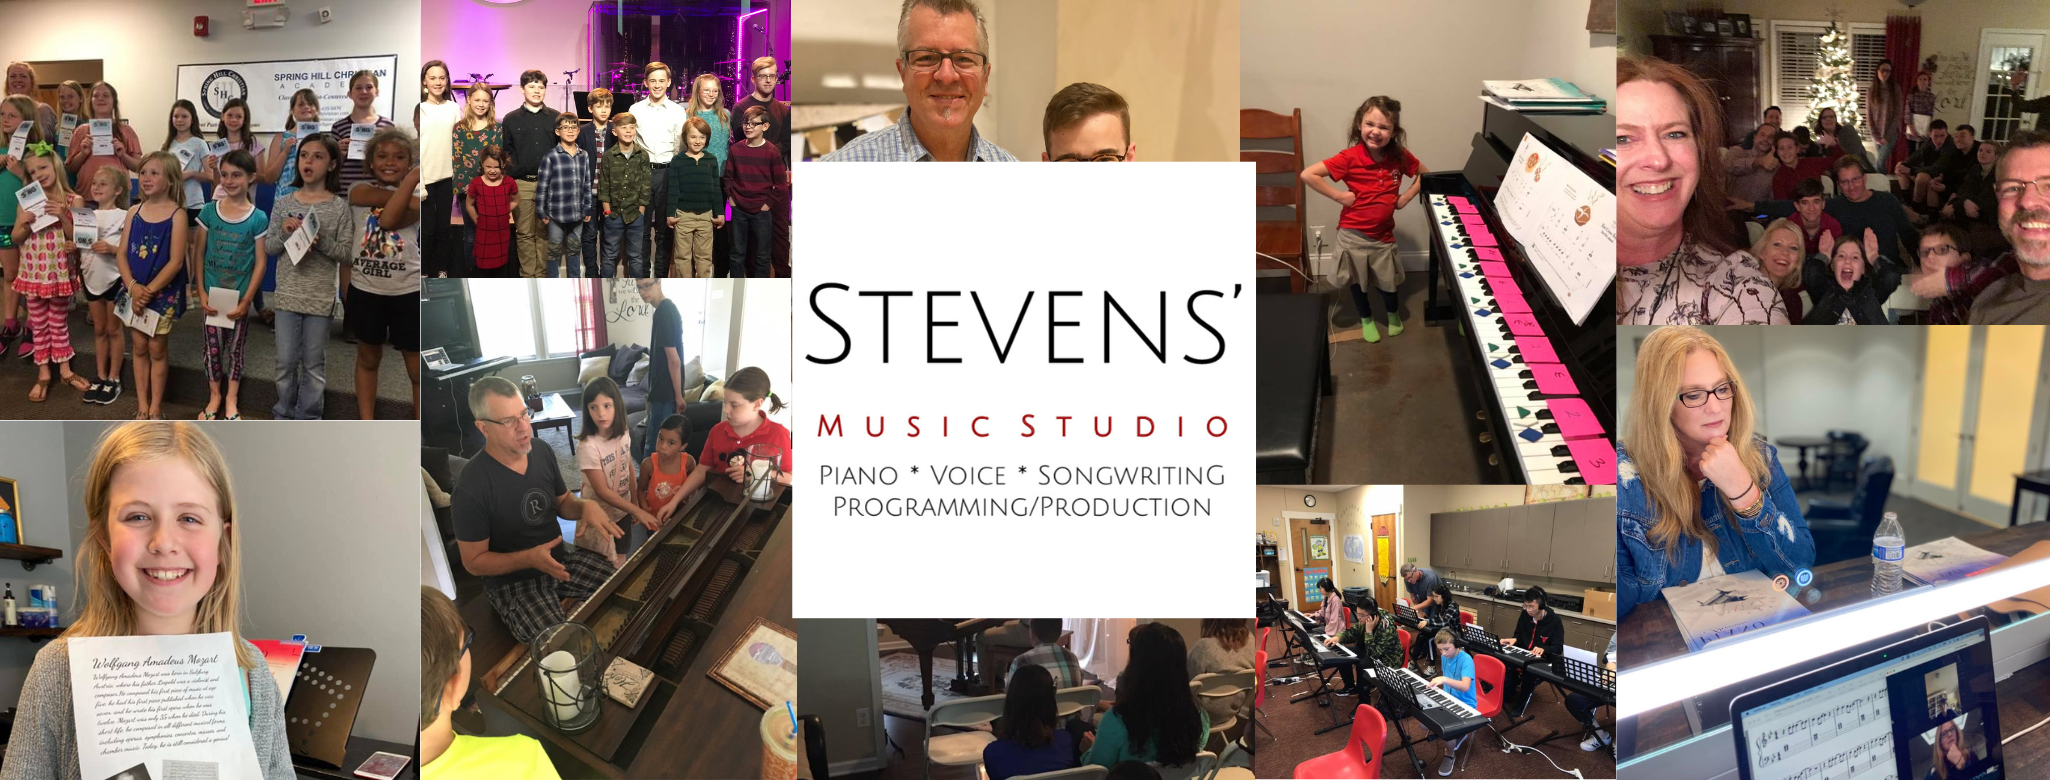 Stevens Music Studio